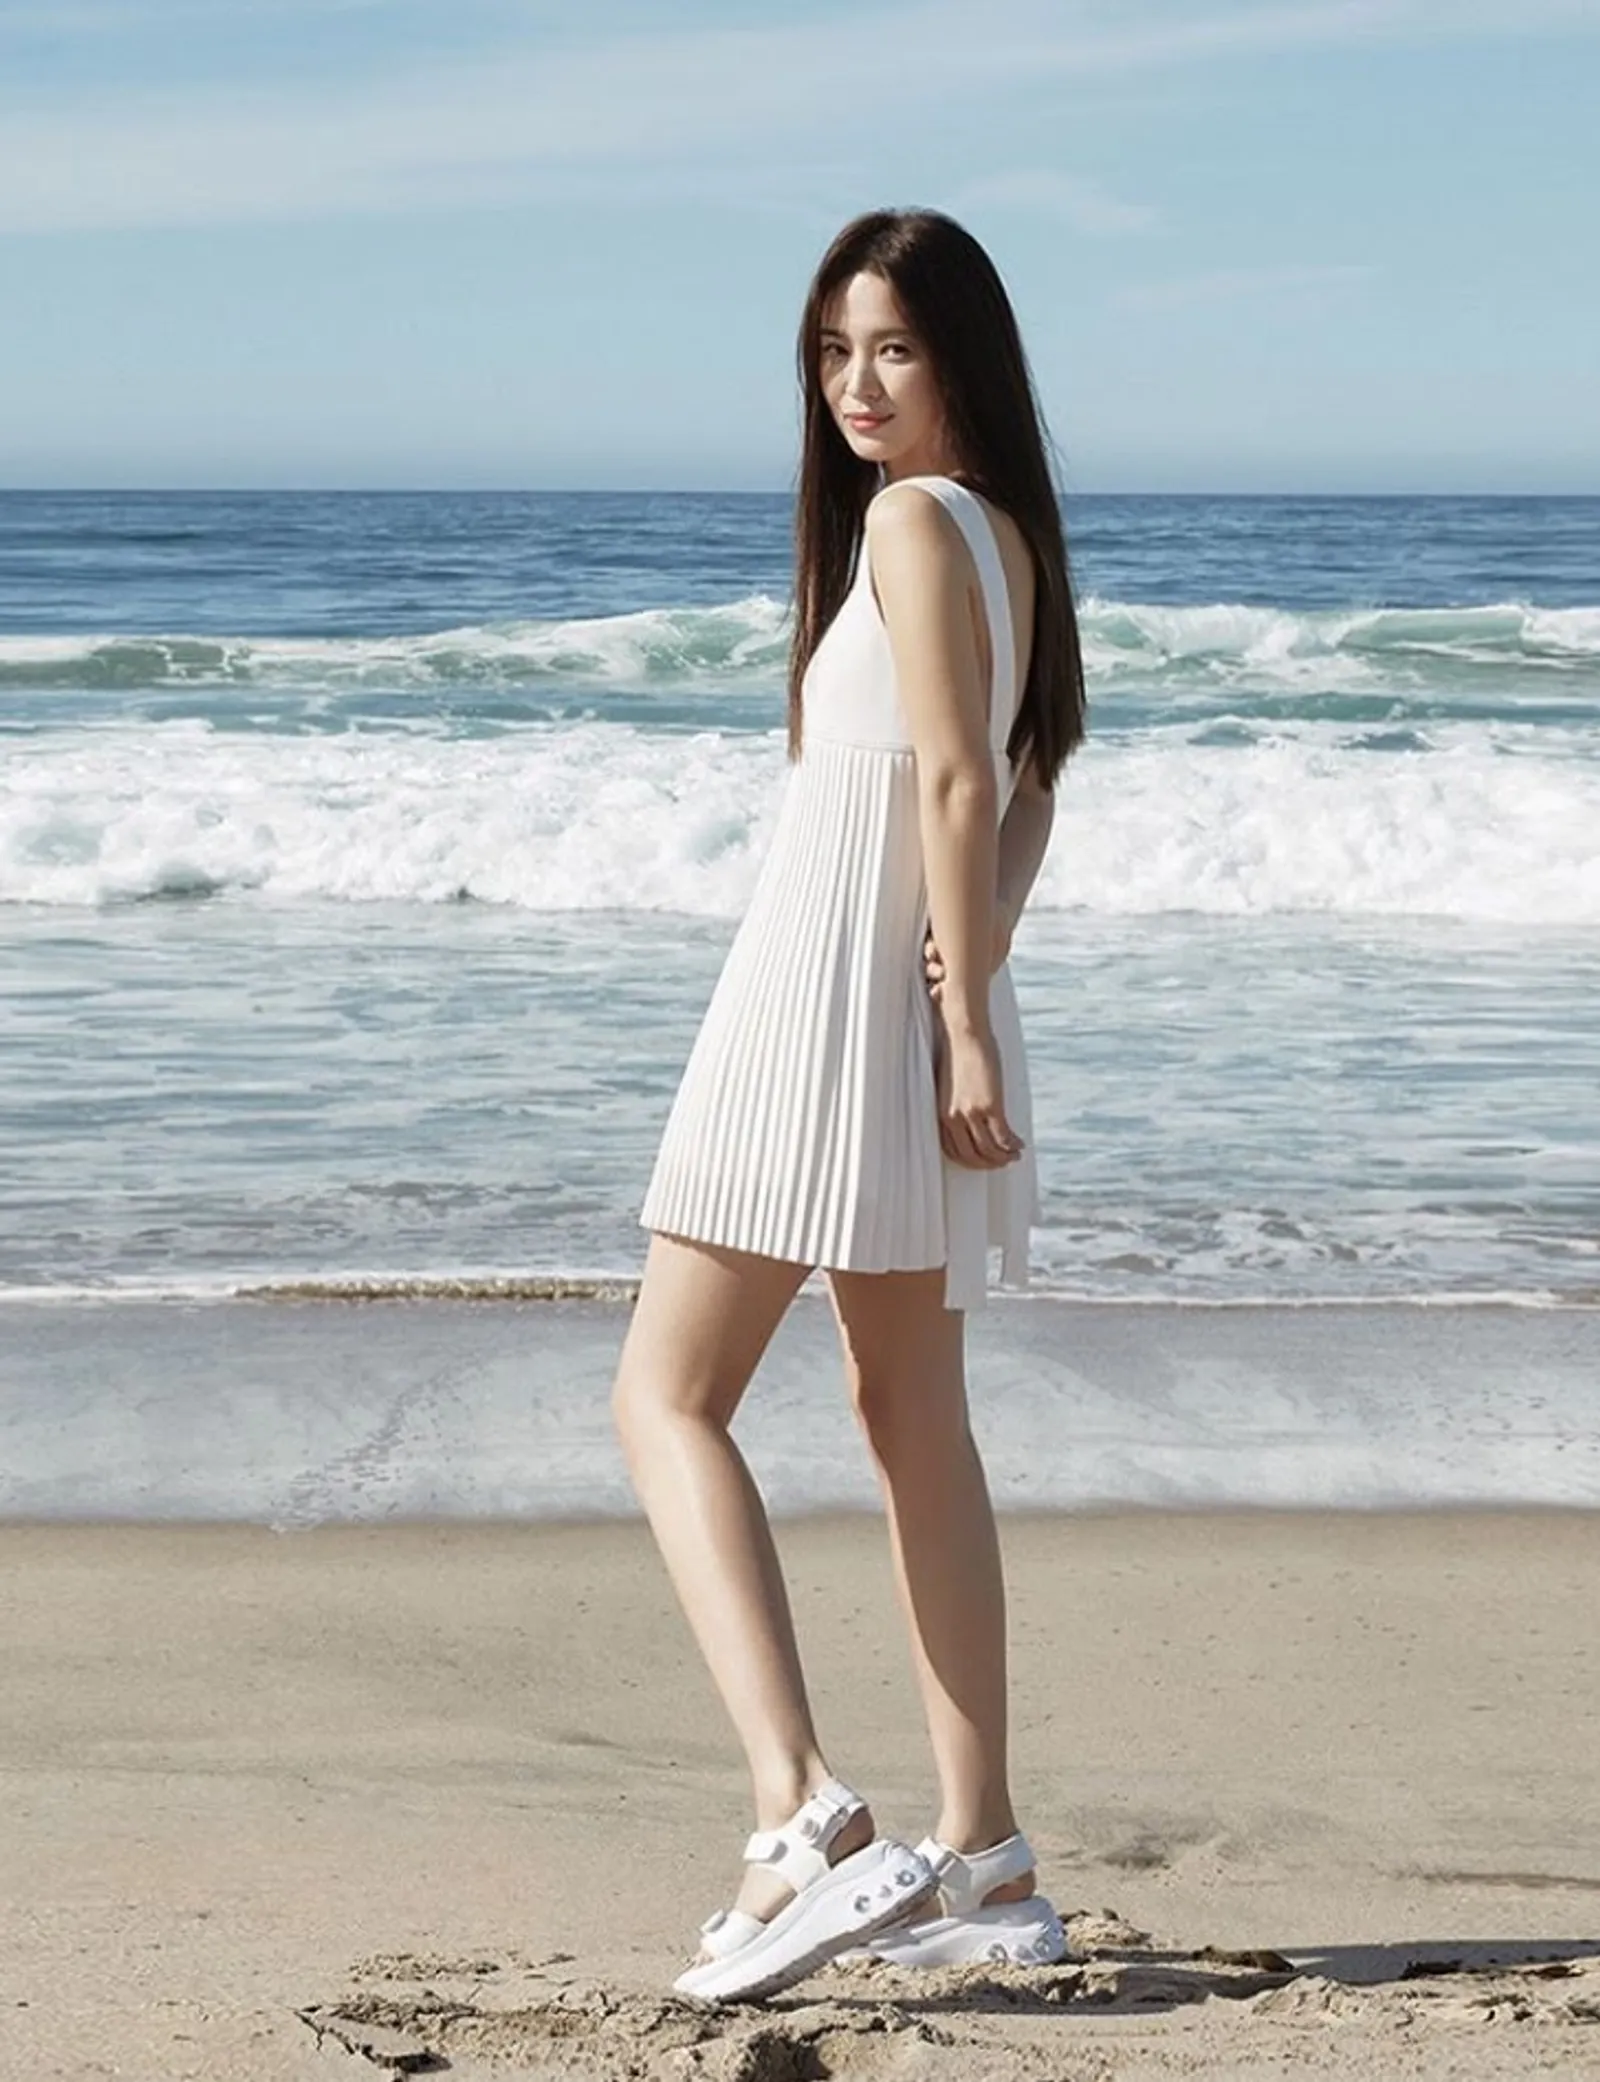 Ide Outfit Liburan ke Pantai a La Artis Korea